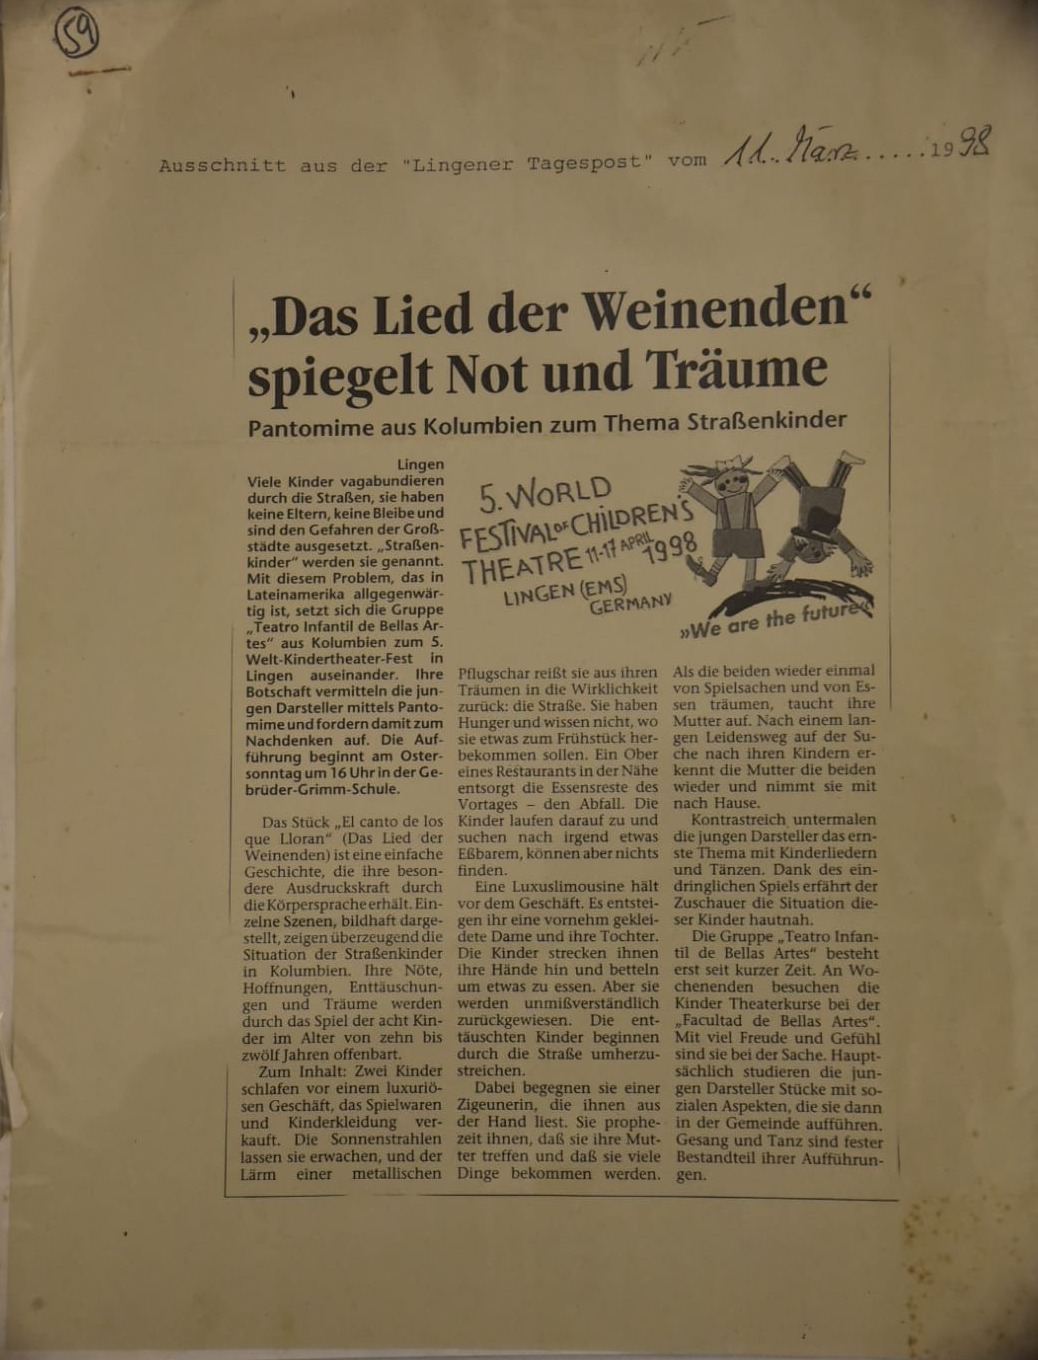 Una publicación periodística alemana